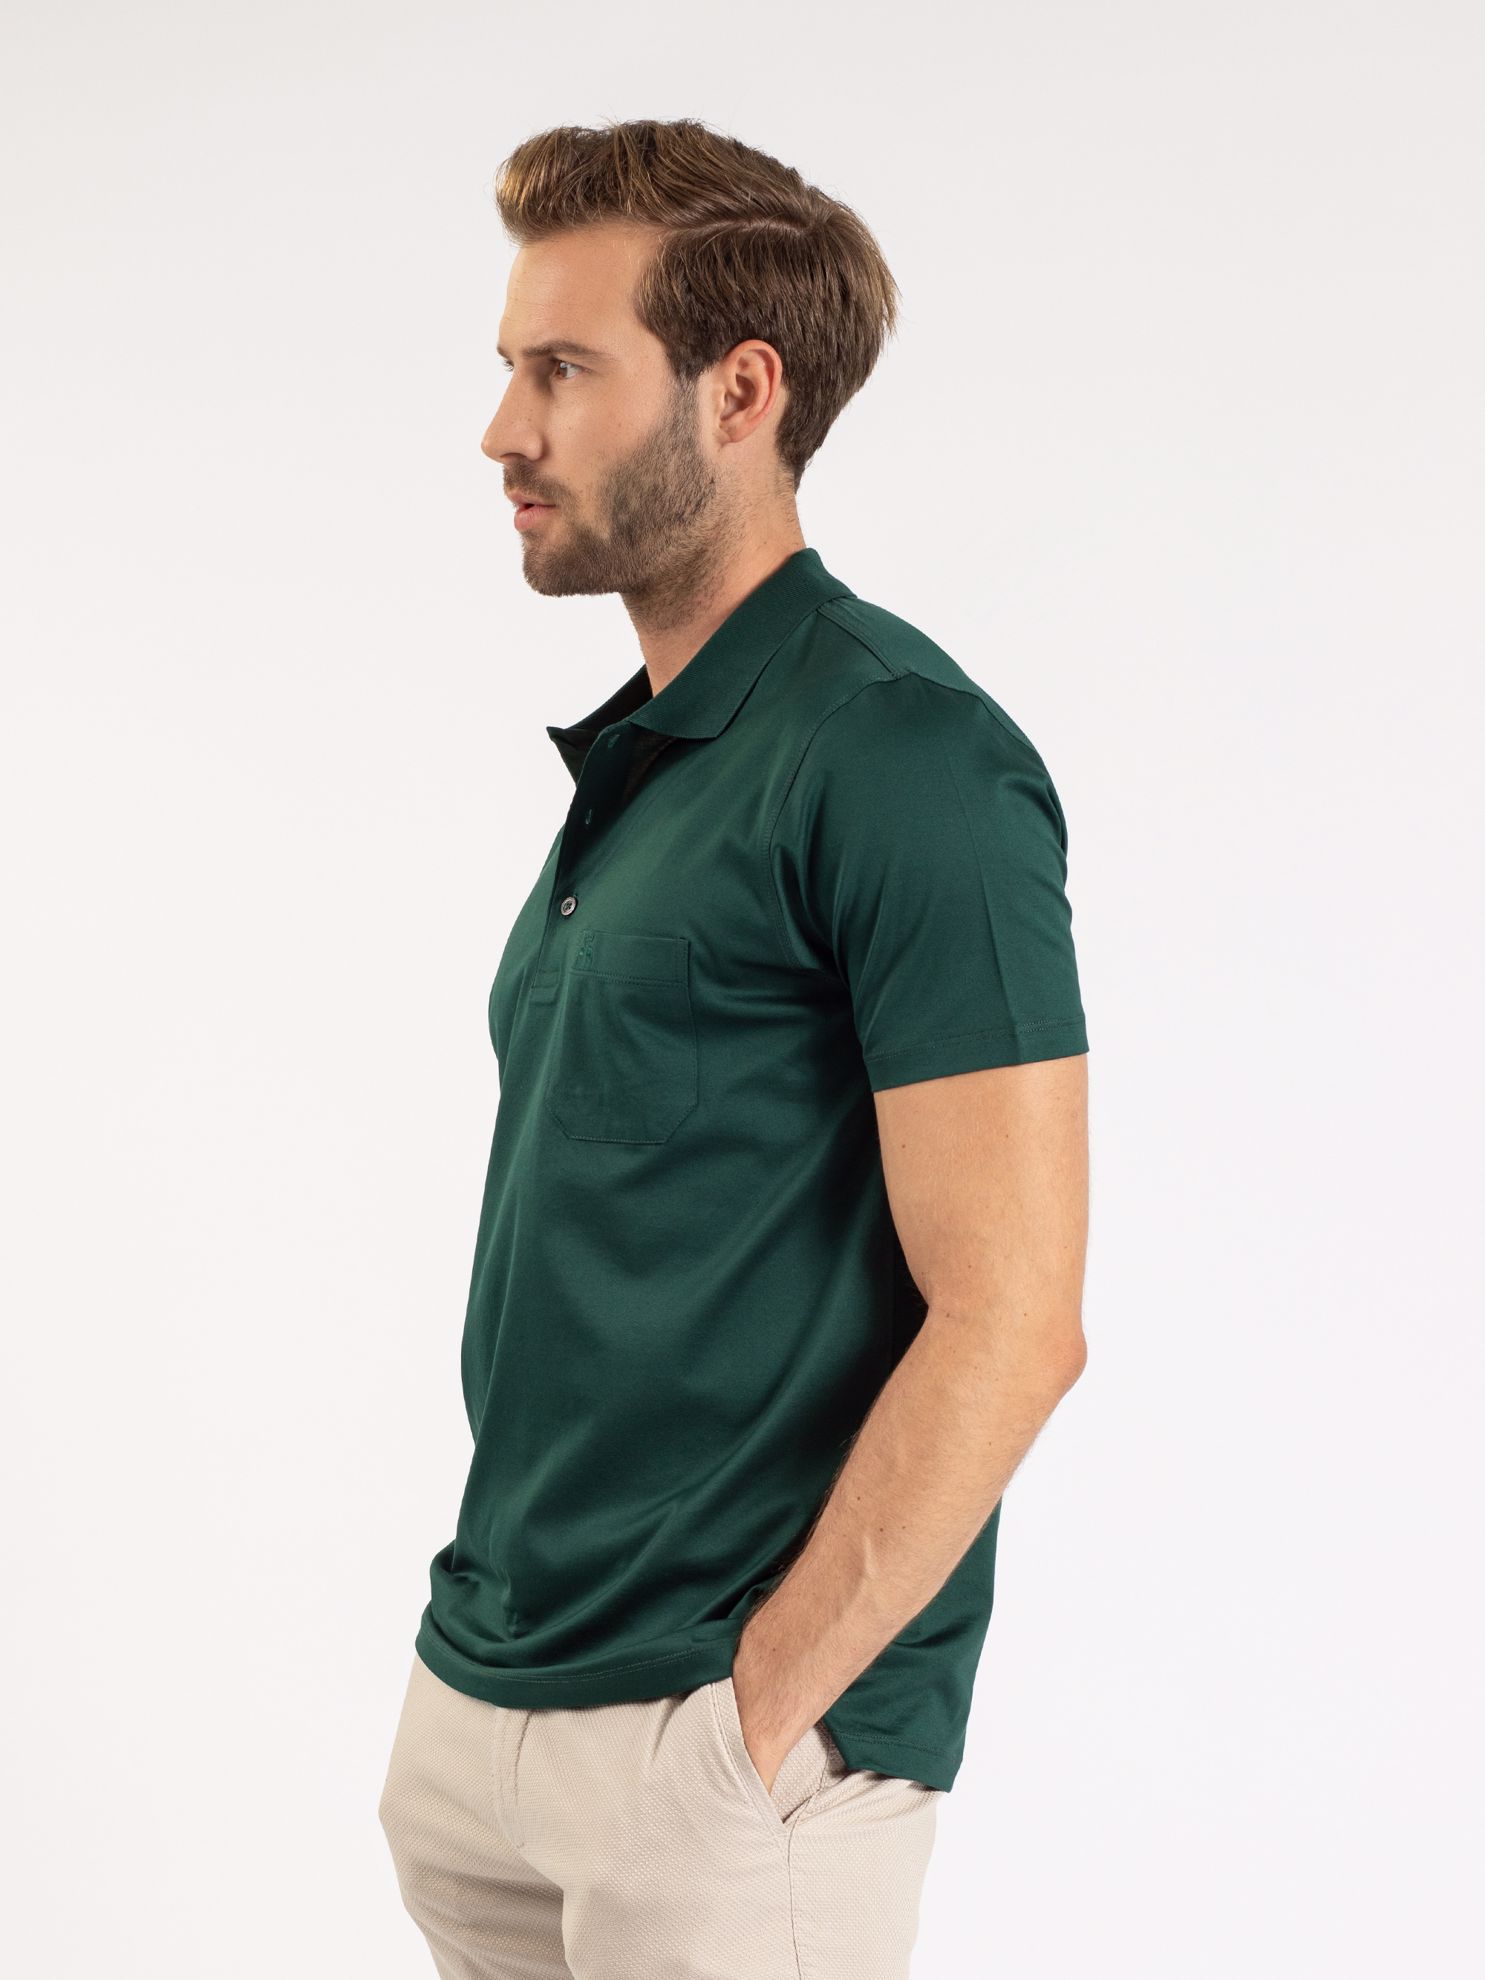 Karaca Erkek Regular Fit Polo Yaka Tişört-Koyu Yeşil. ürün görseli